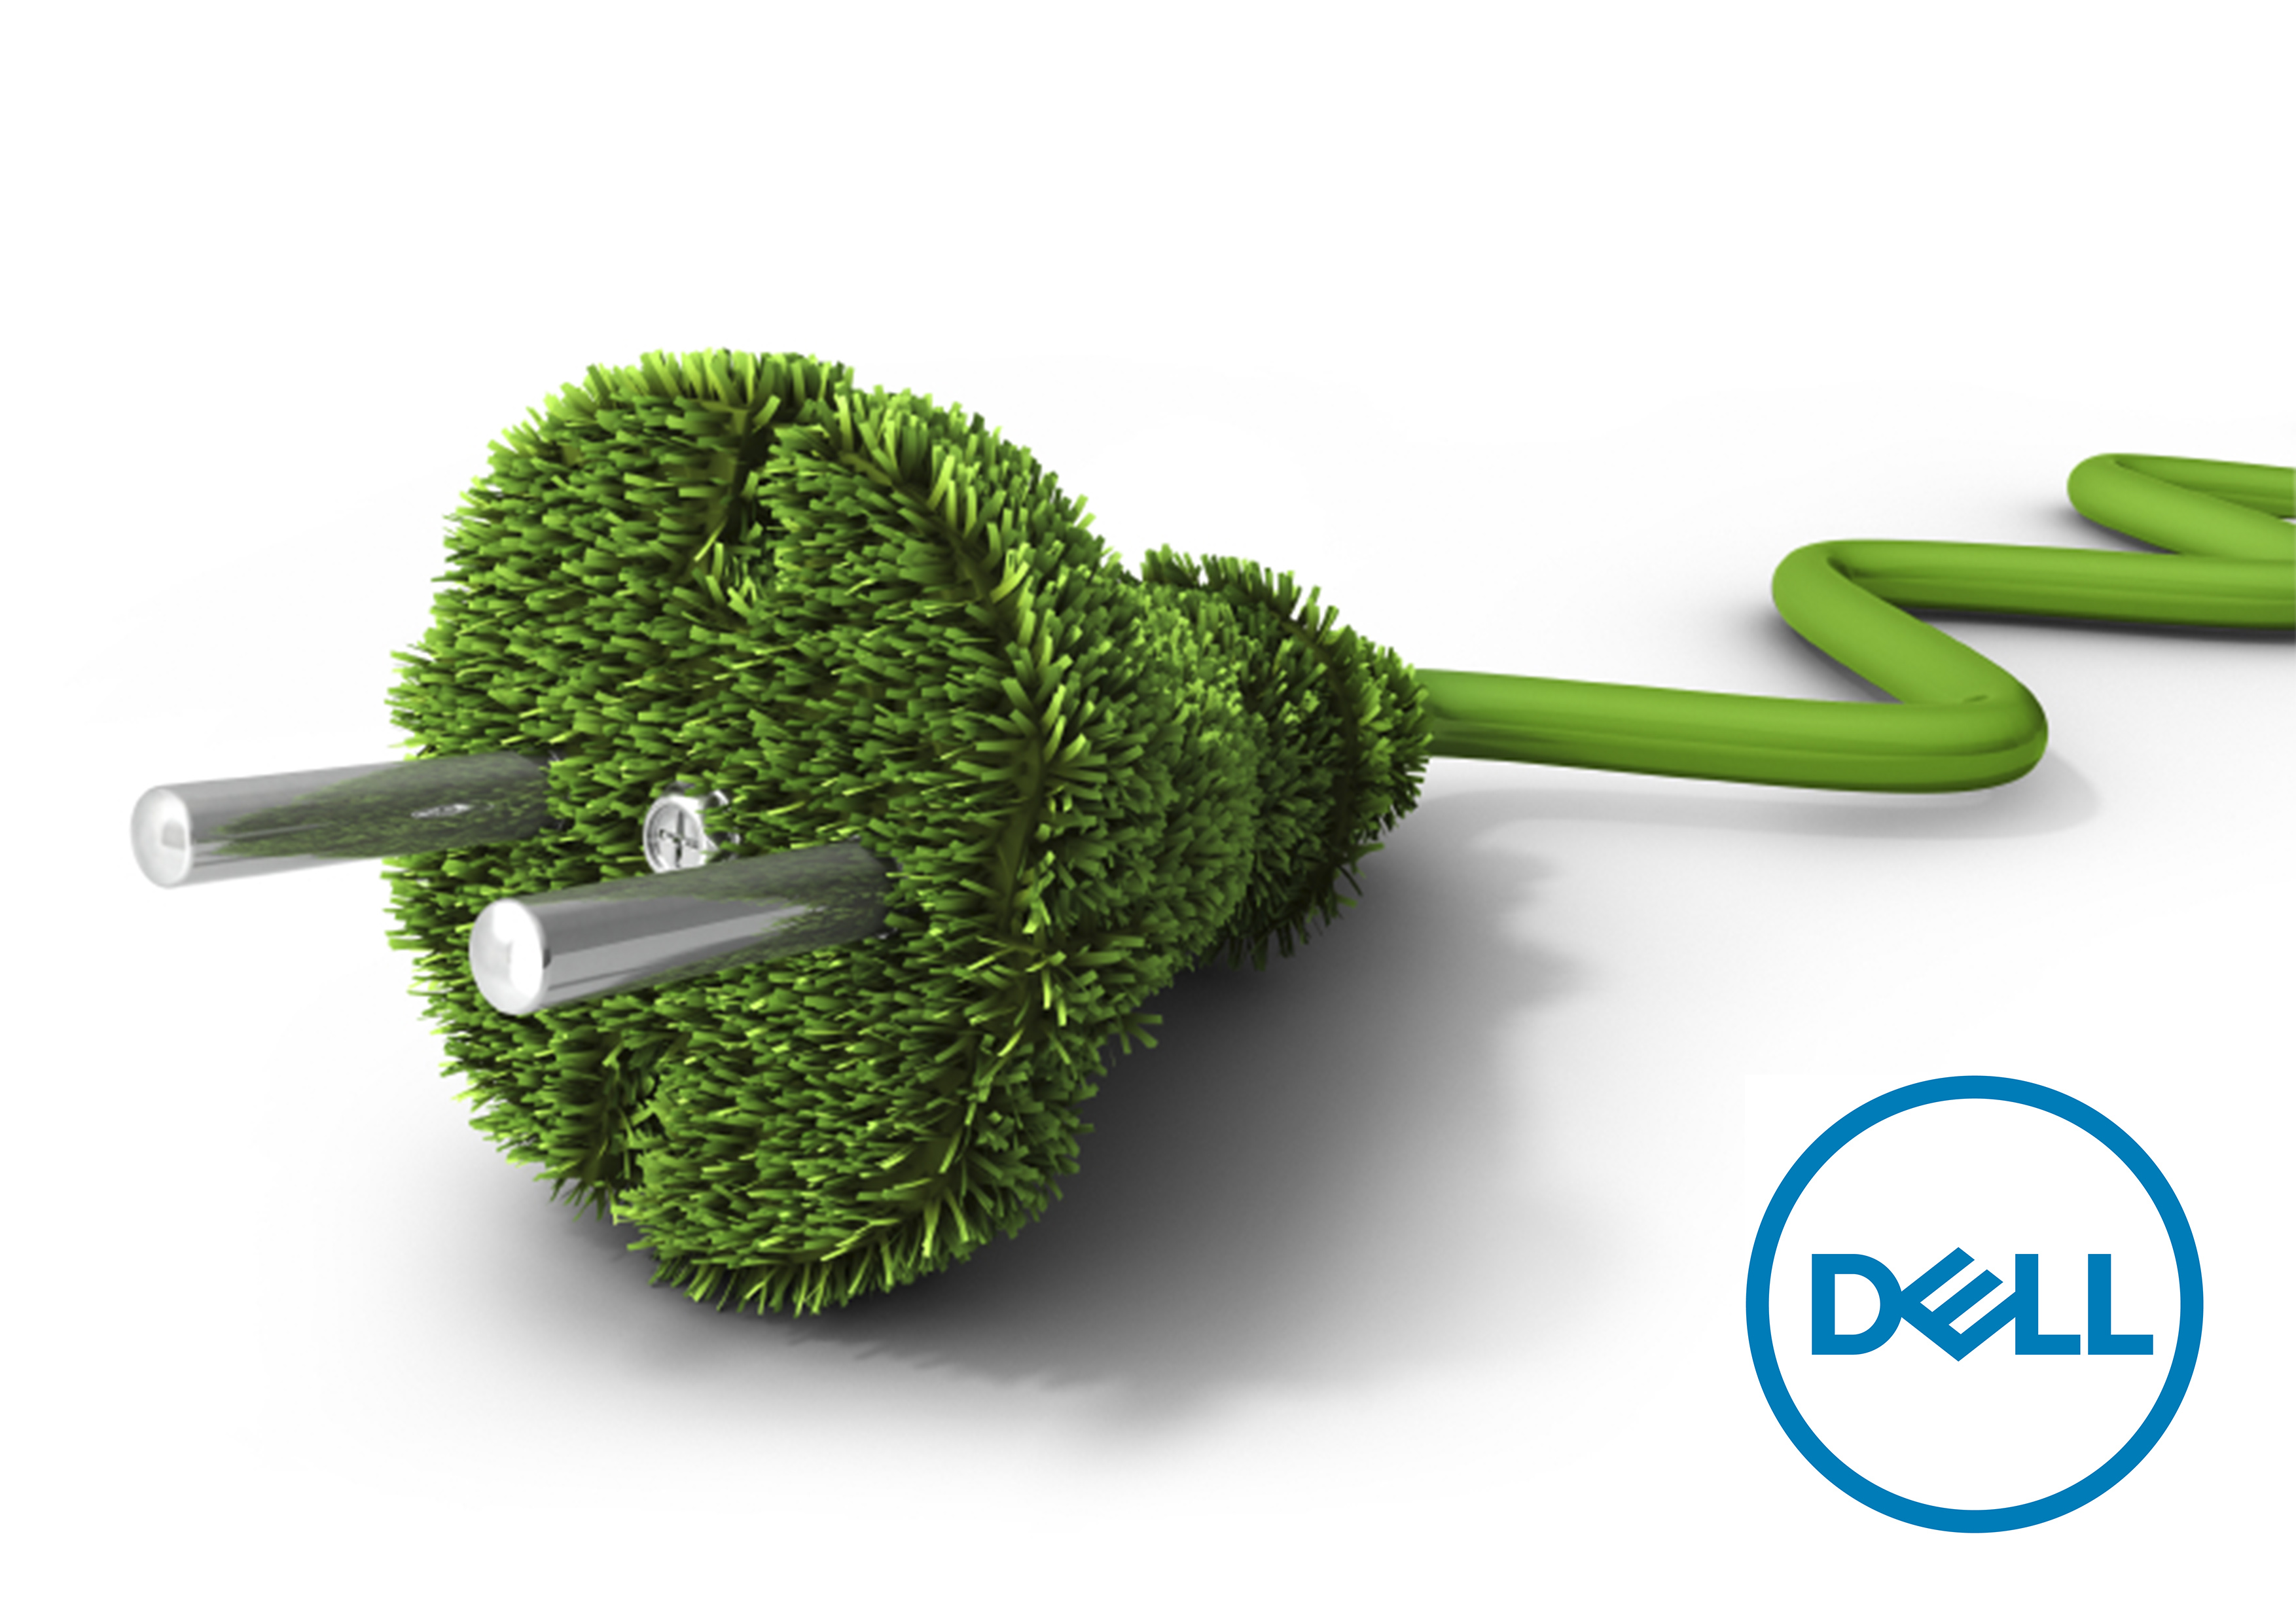 Responsabilidad de Dell con el medio ambiente - Image